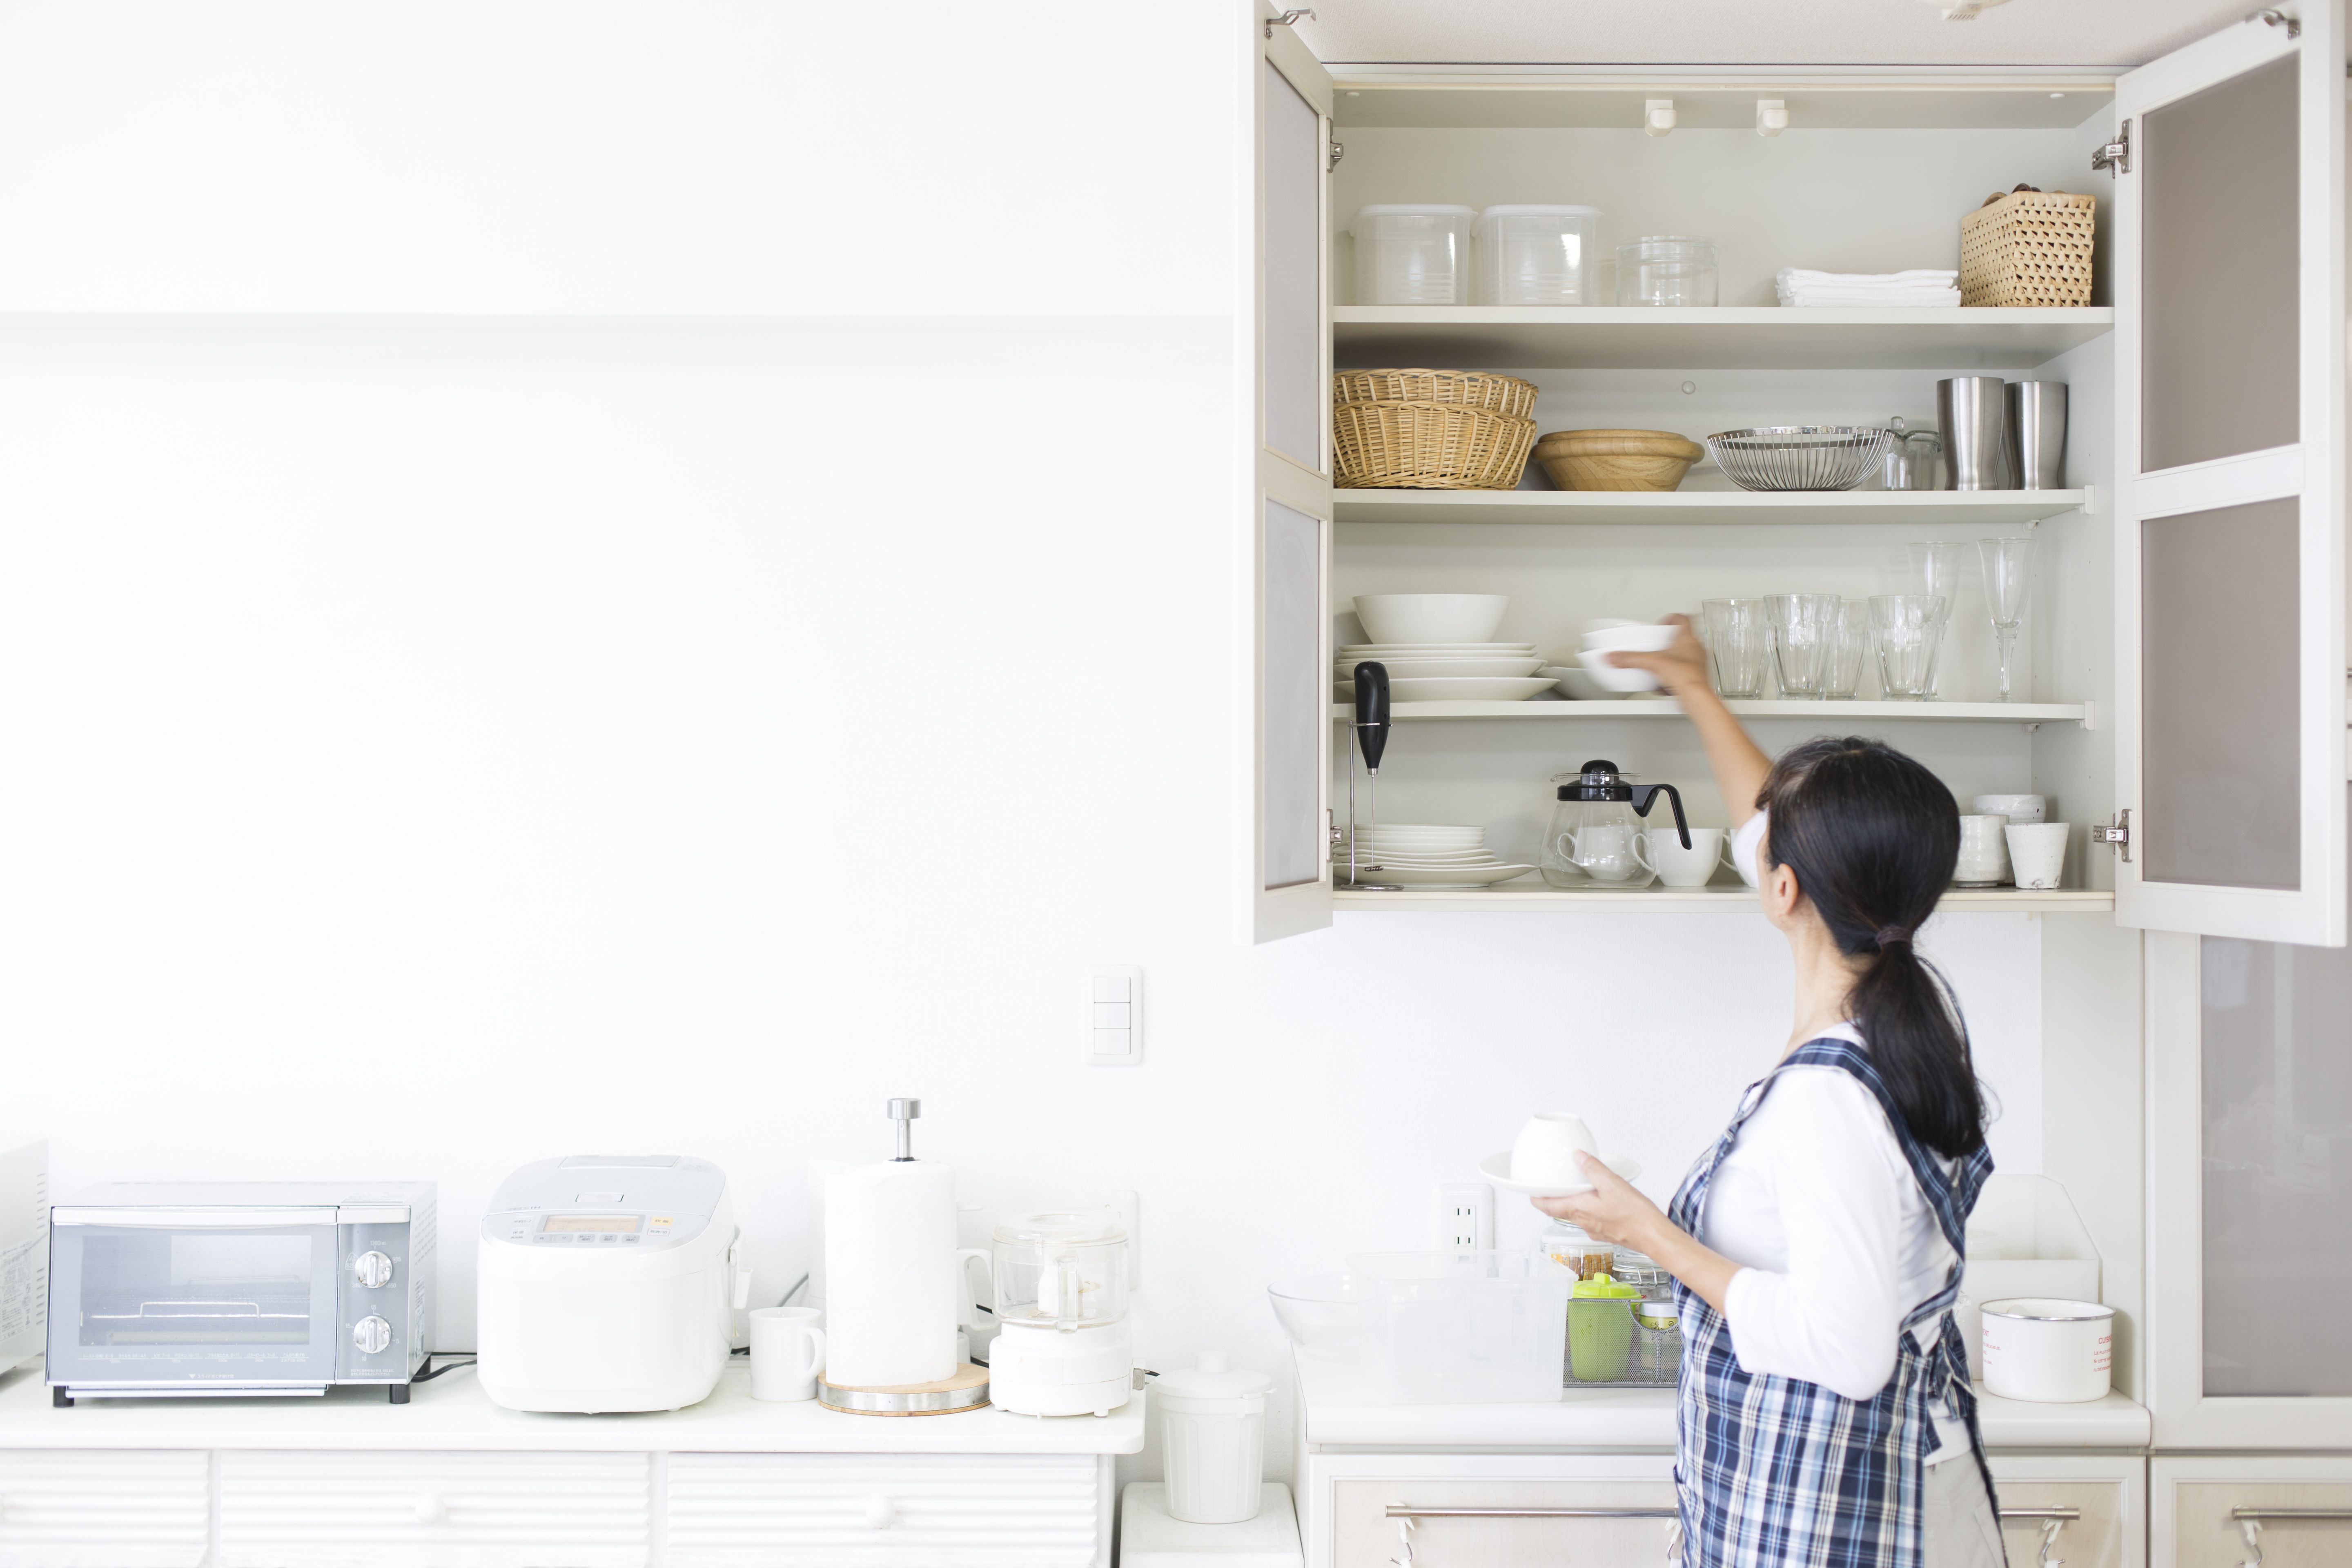 6 Hooks Cup Holder Hang Kitchen Cabinet Under Shelf Storage Rack Organizer Top